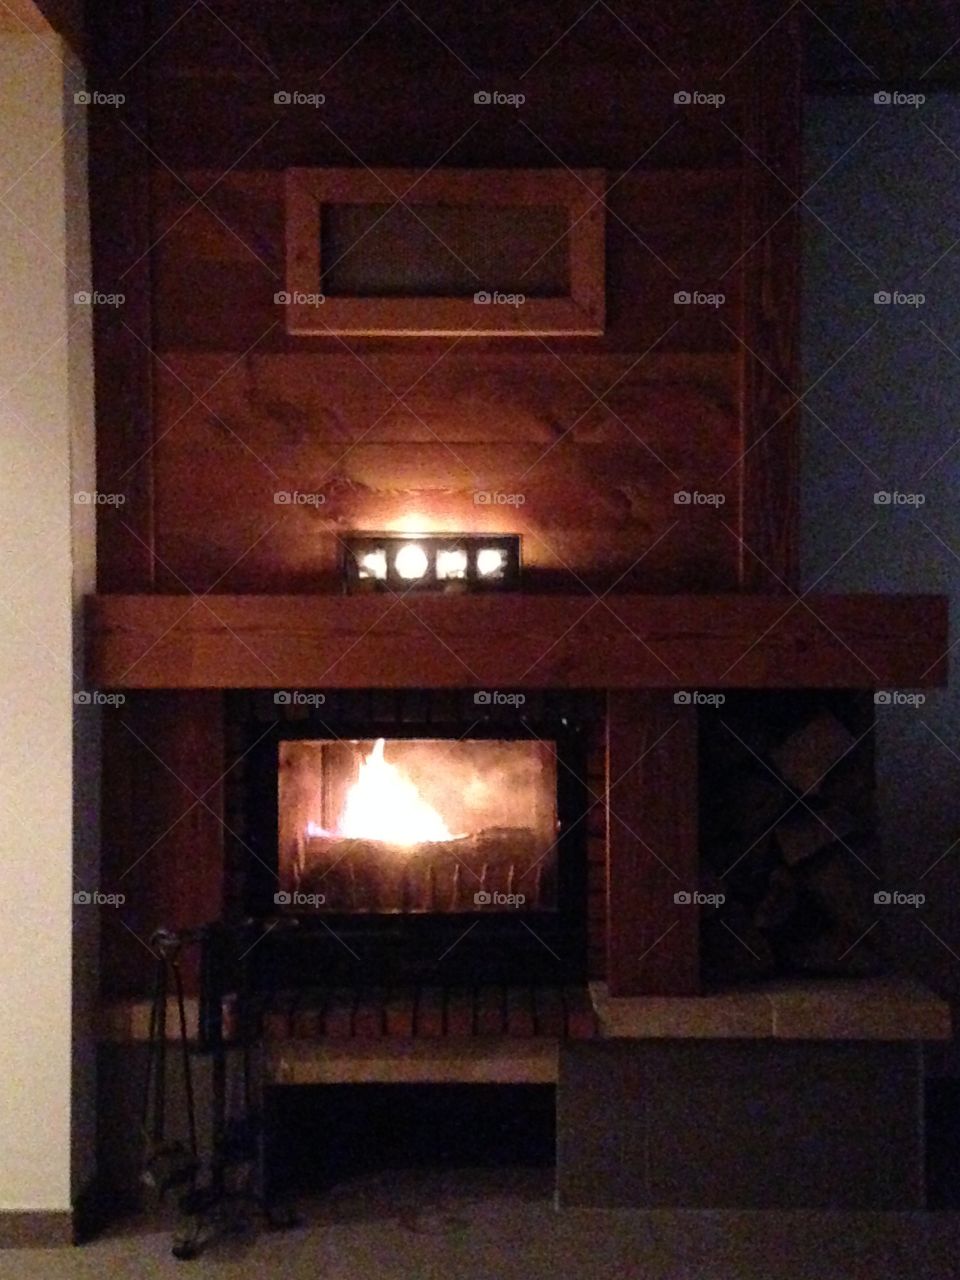 Fireplace in winter